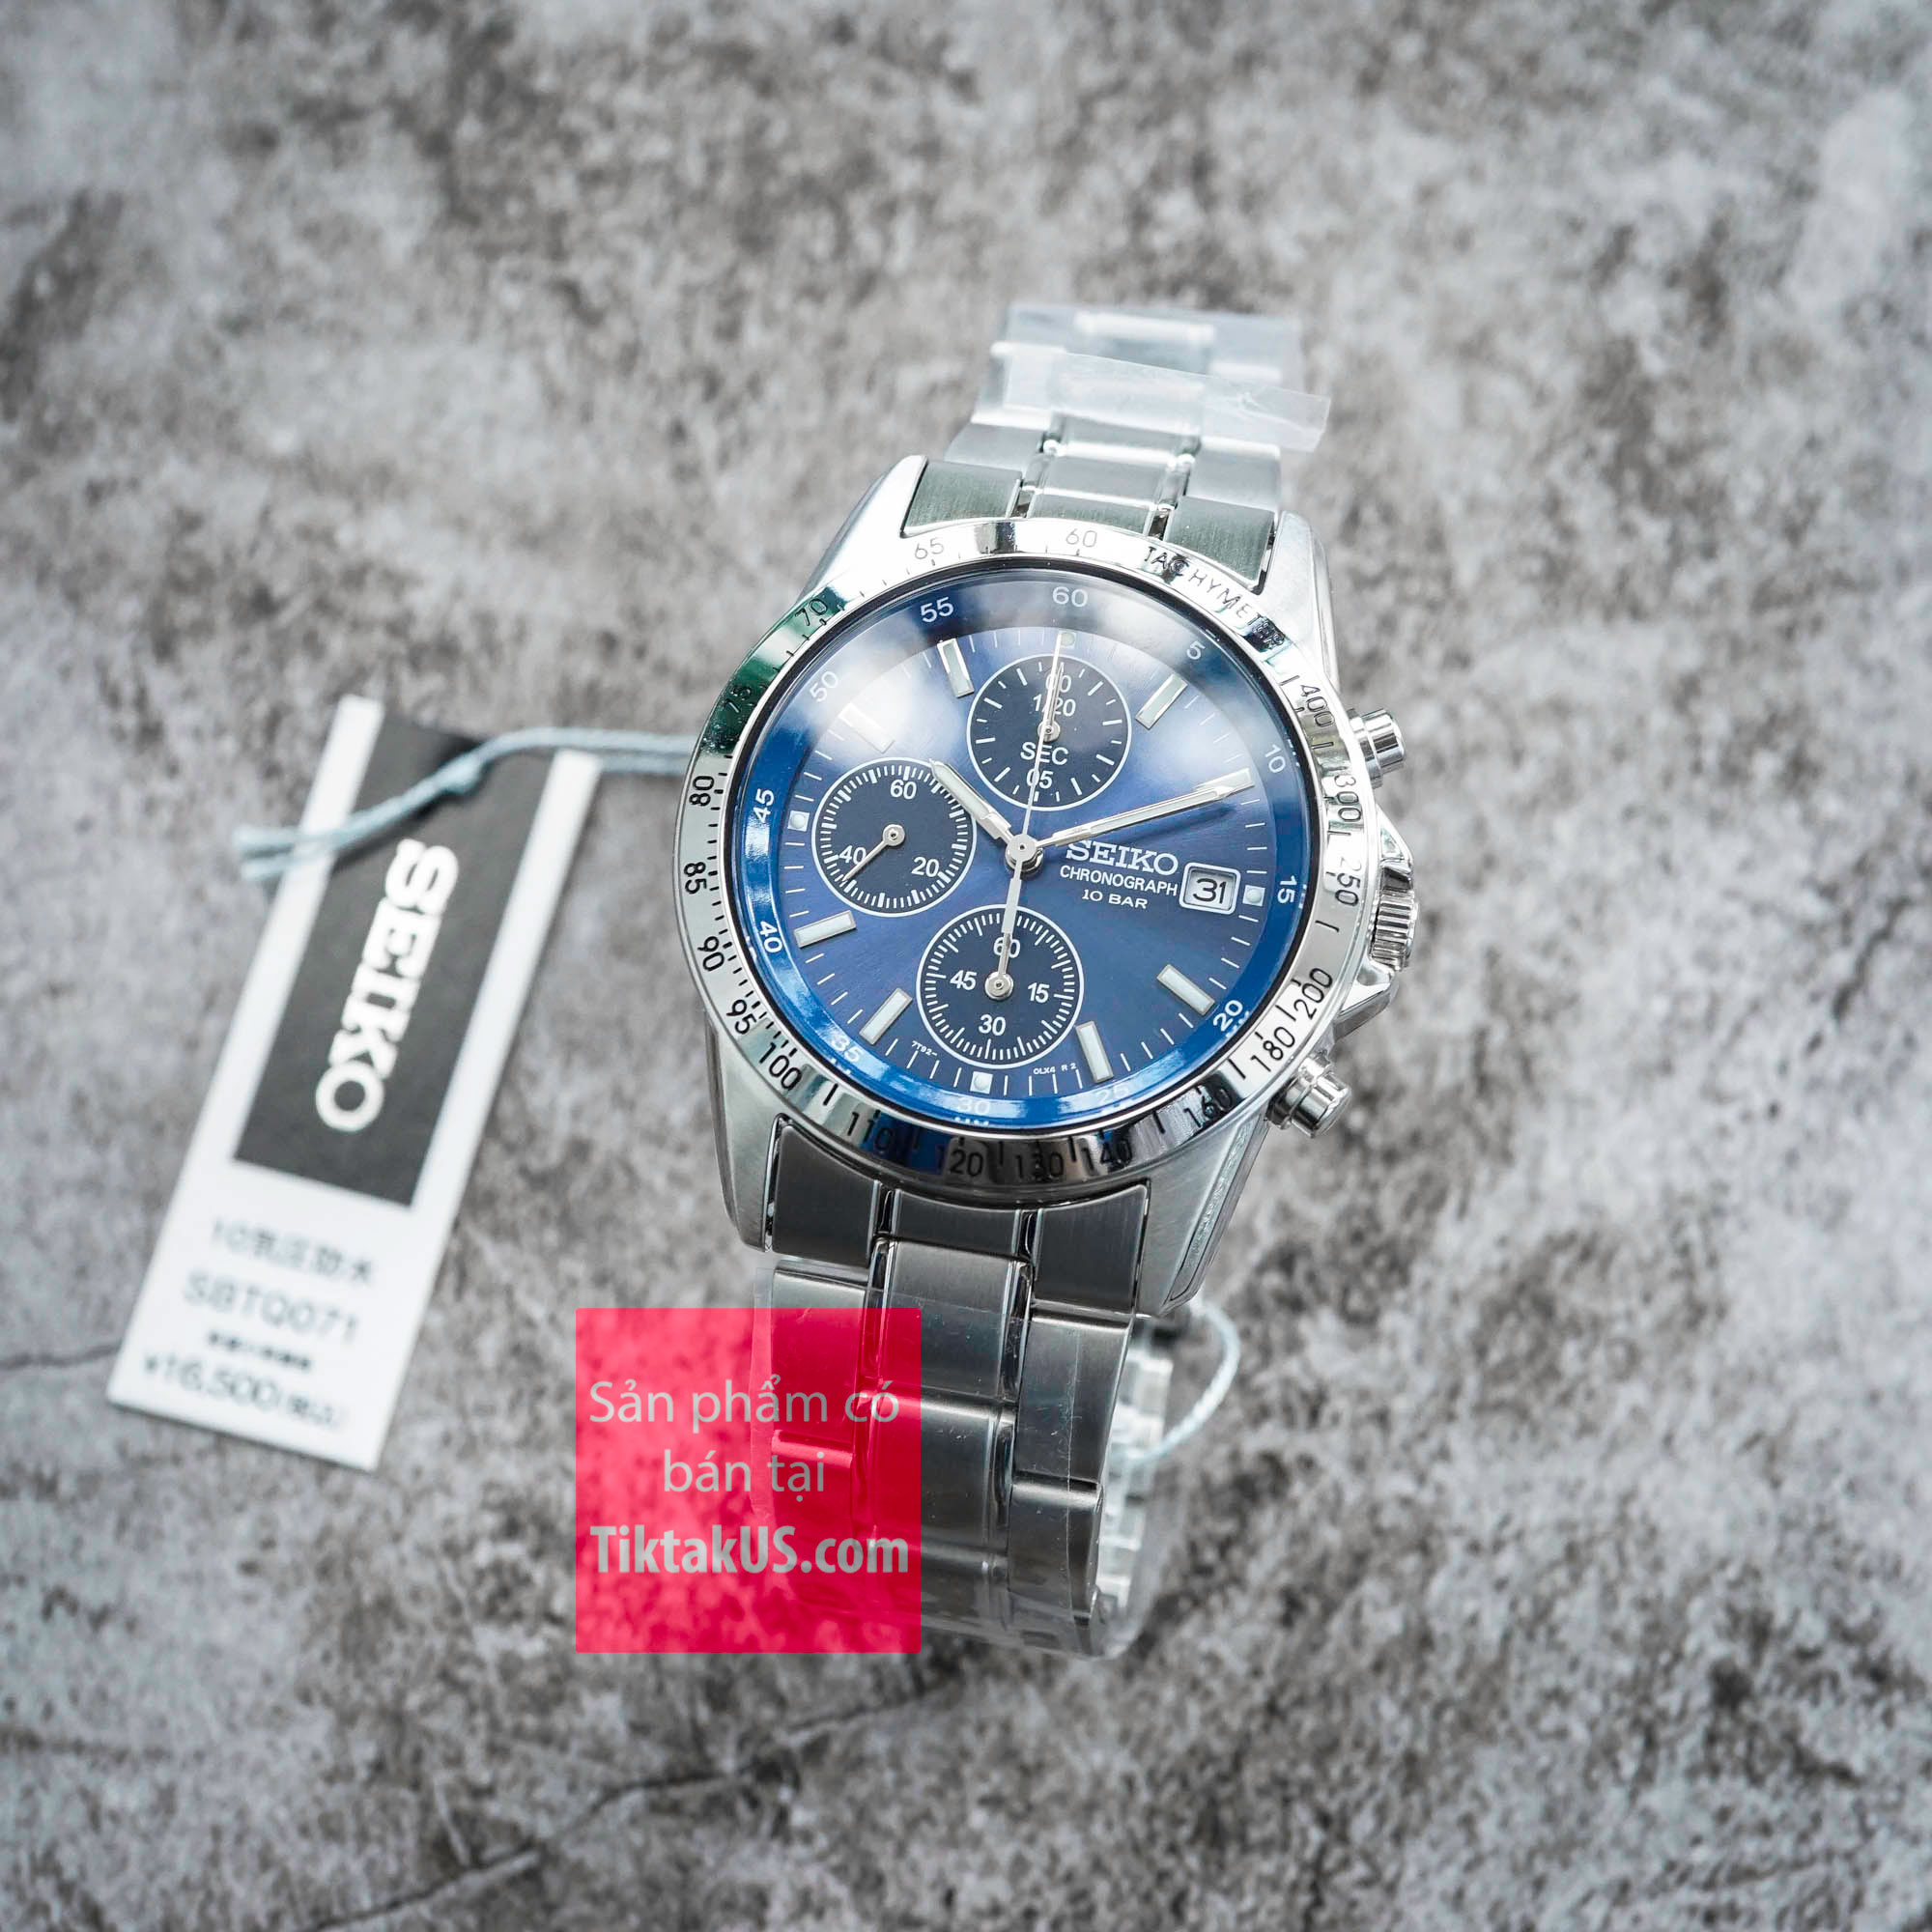 Đồng hồ nam Seiko Quartz Chronograph SBTQ071 size  chống nước 100m  bấm giờ thể thao 6 kim kính Harlex 